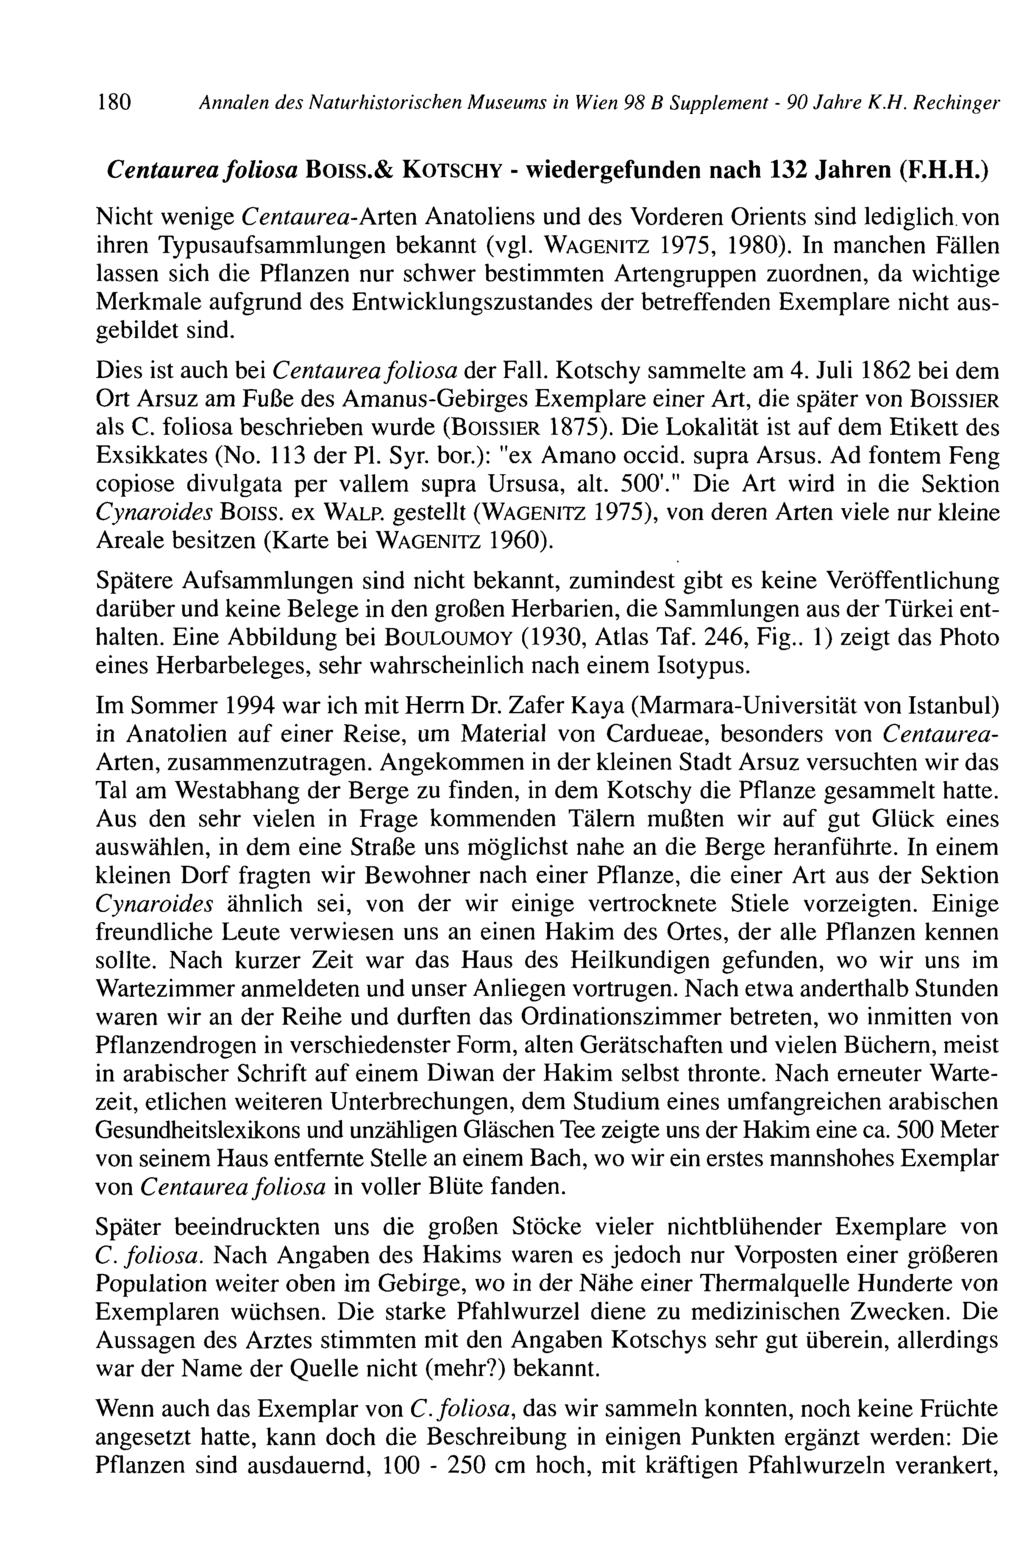 180 Annalen des Natur historischen Museums in Wien 98 B Supplement - 90 Jahre K.H.